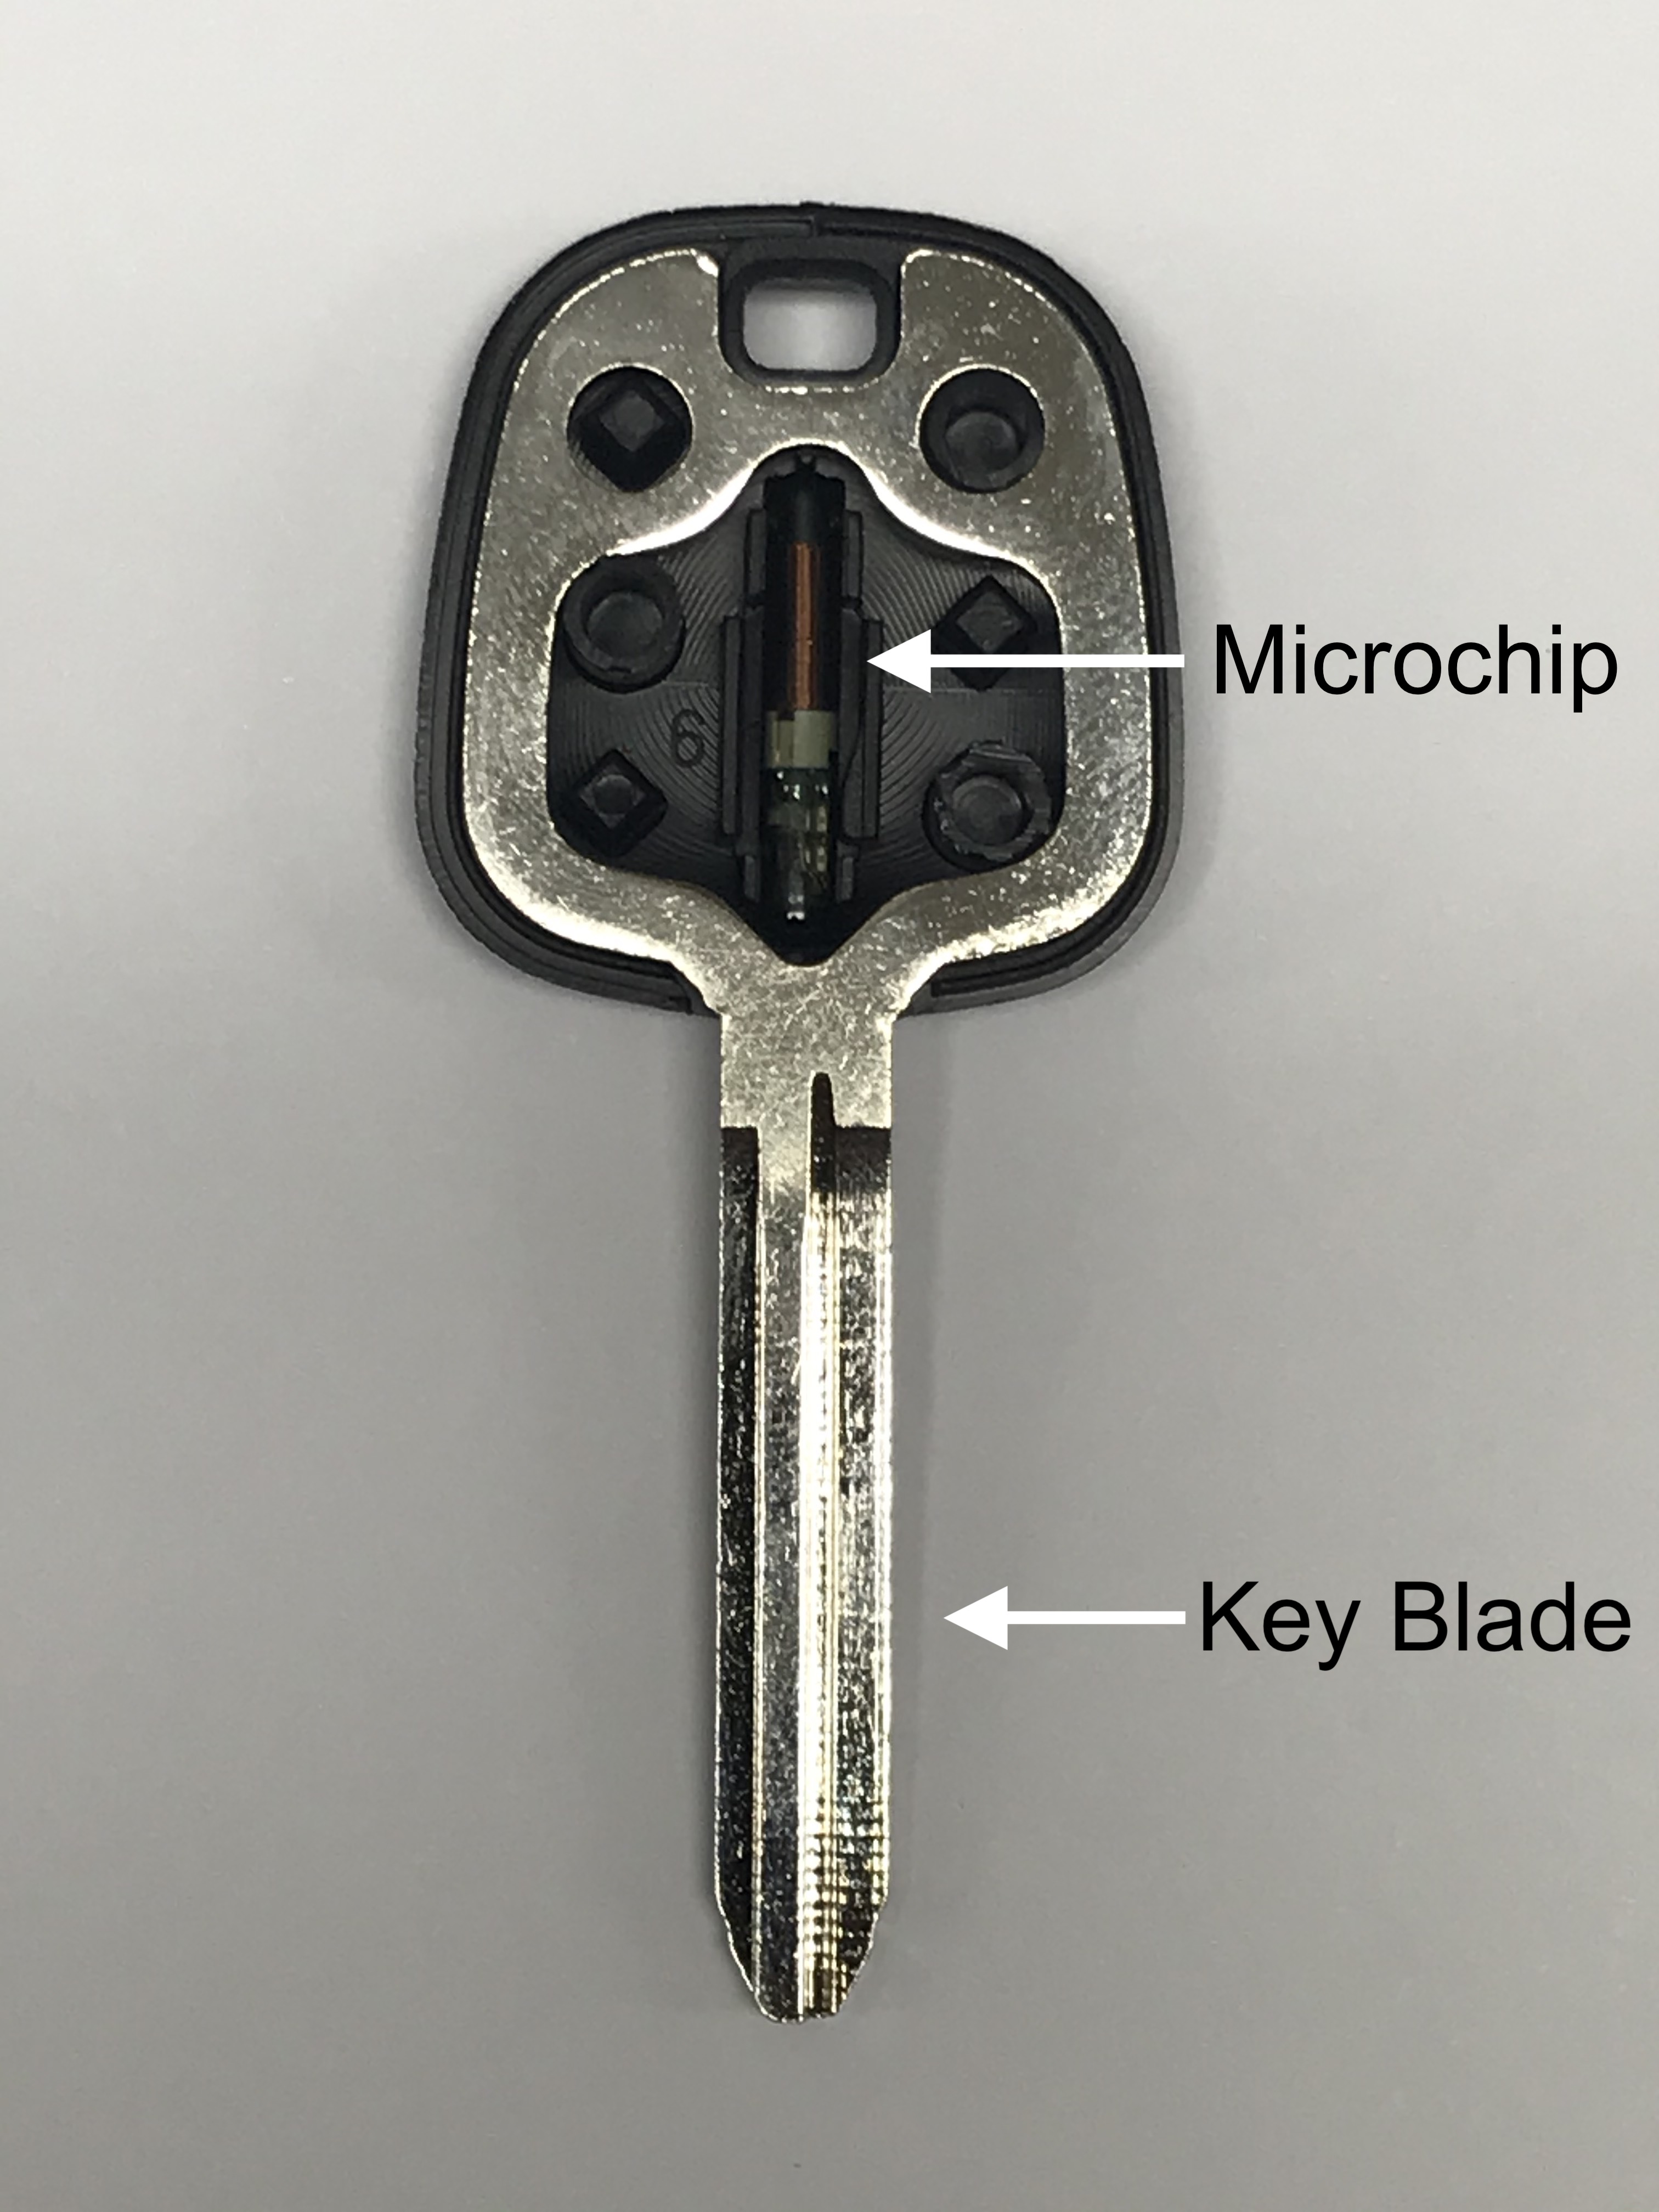 Inside of a transponder key